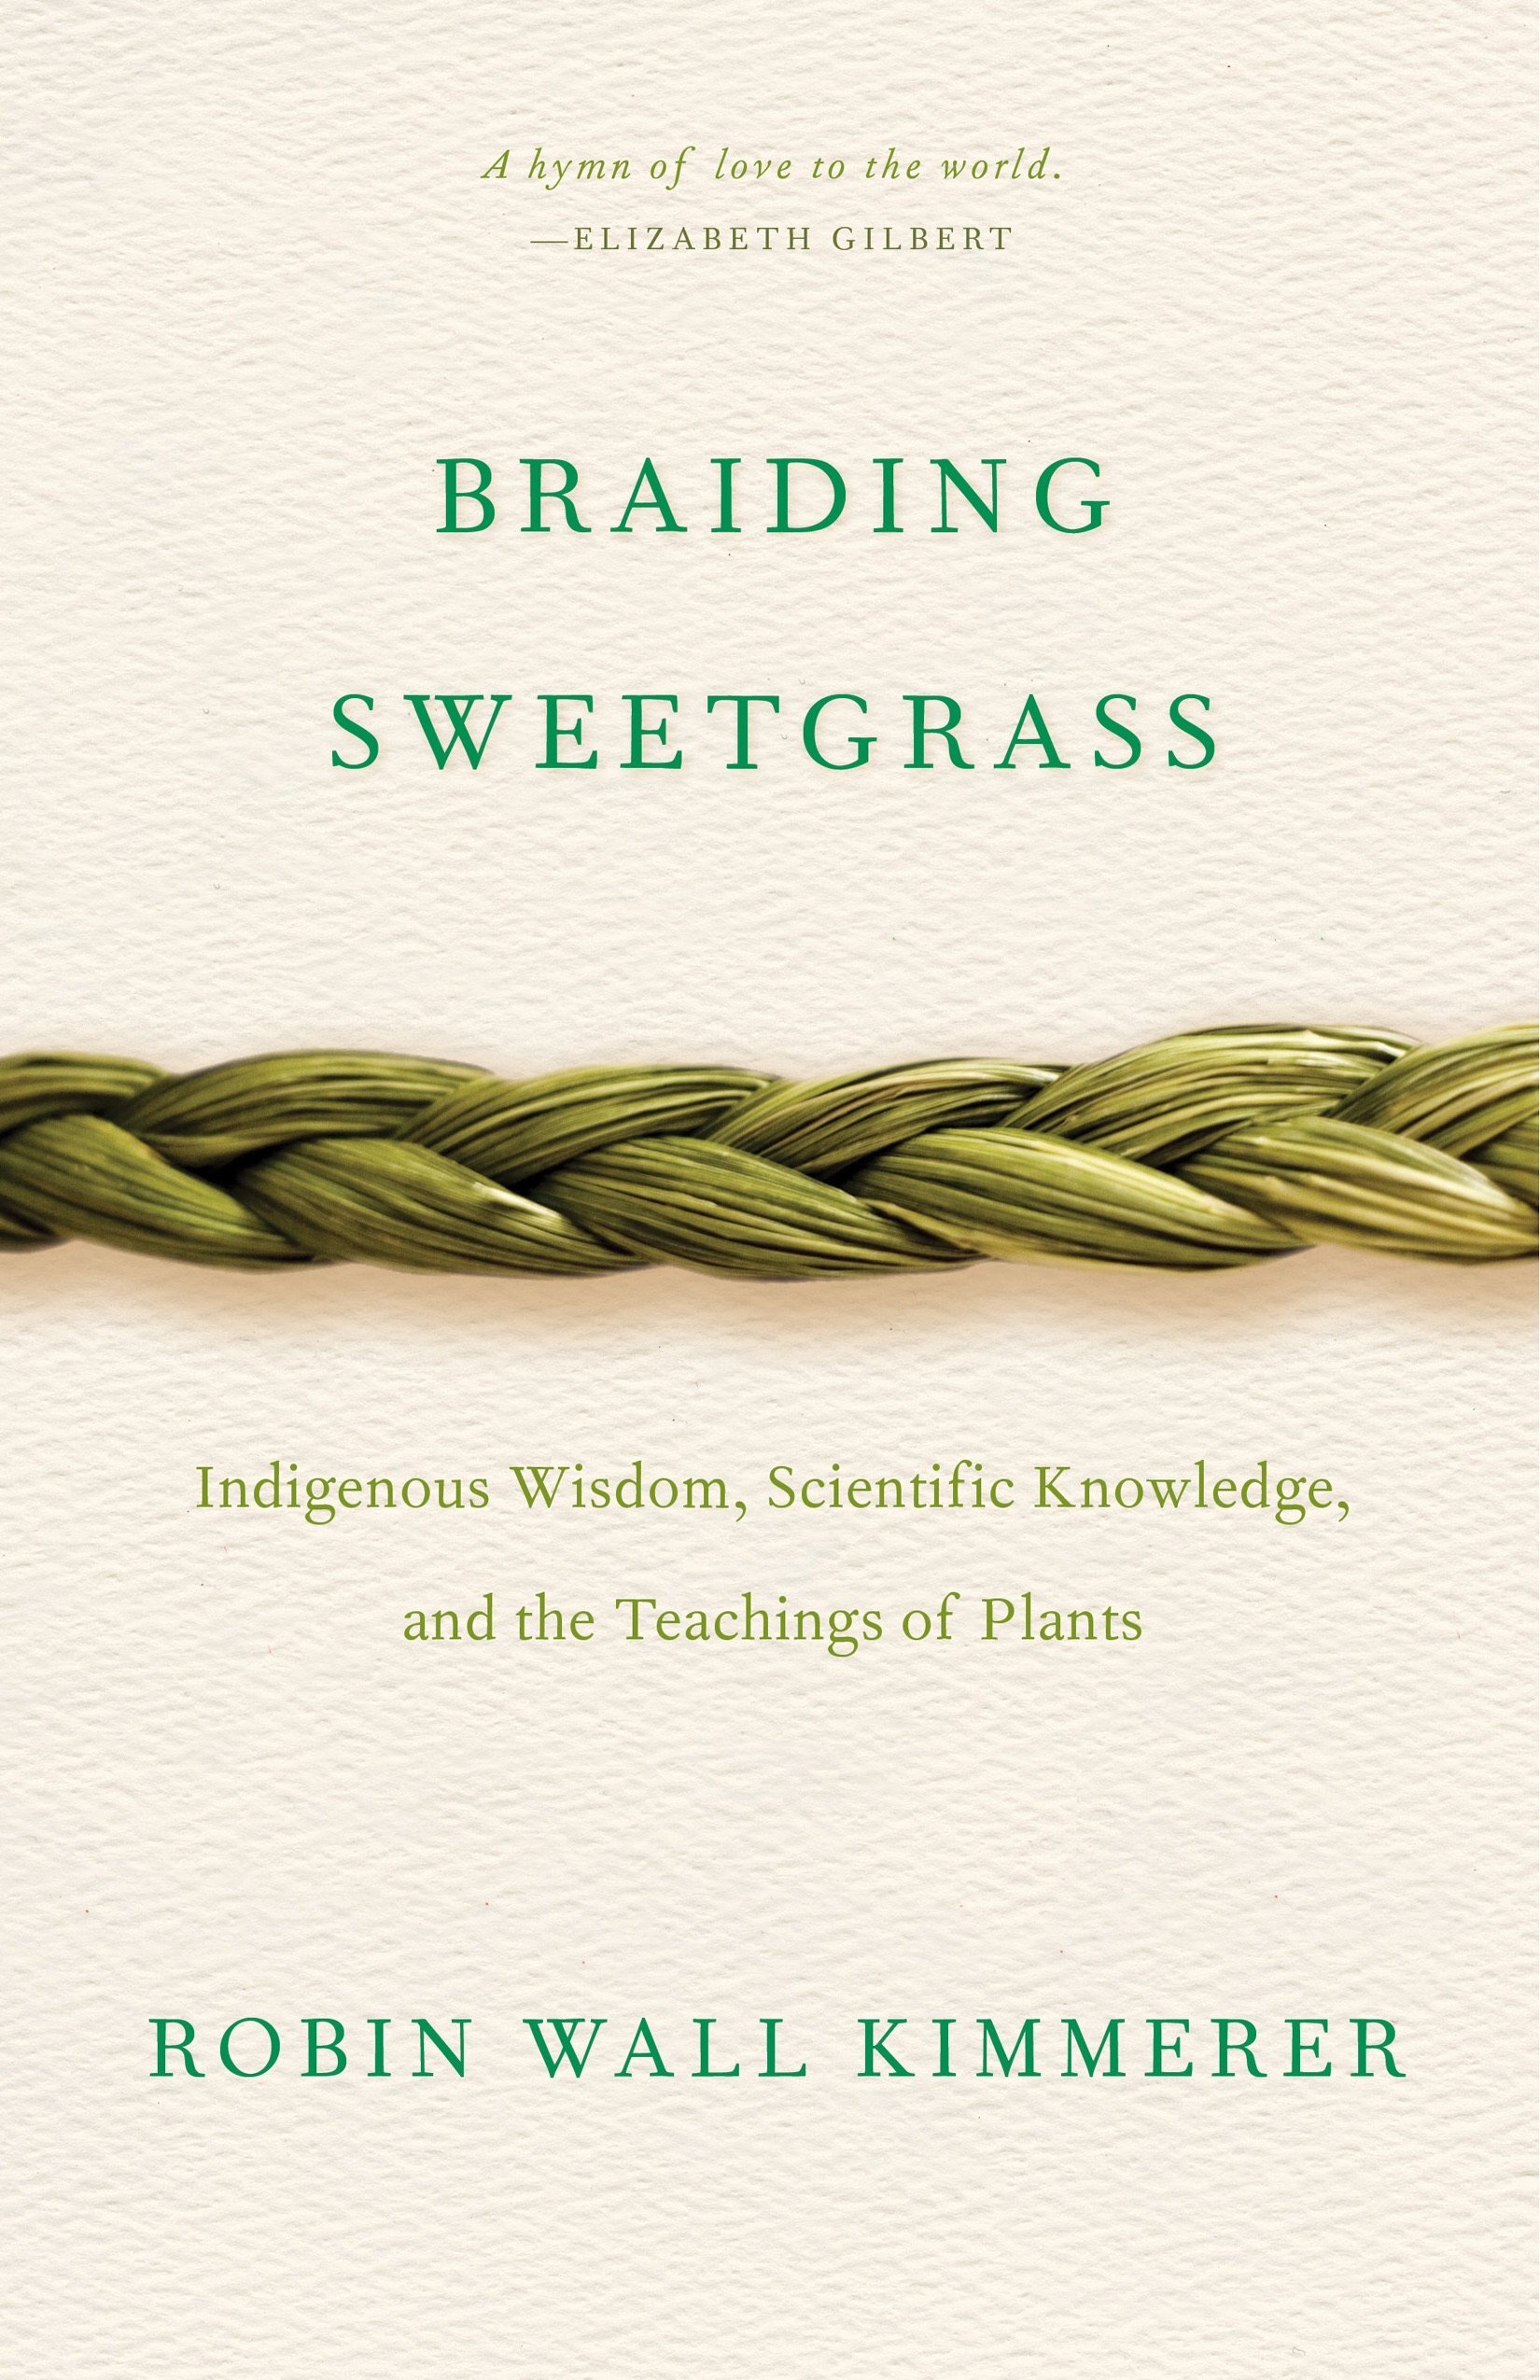 《编织甜草:本土智慧、科学知识和植物的教导》，作者:Robin Wall Kimmerer